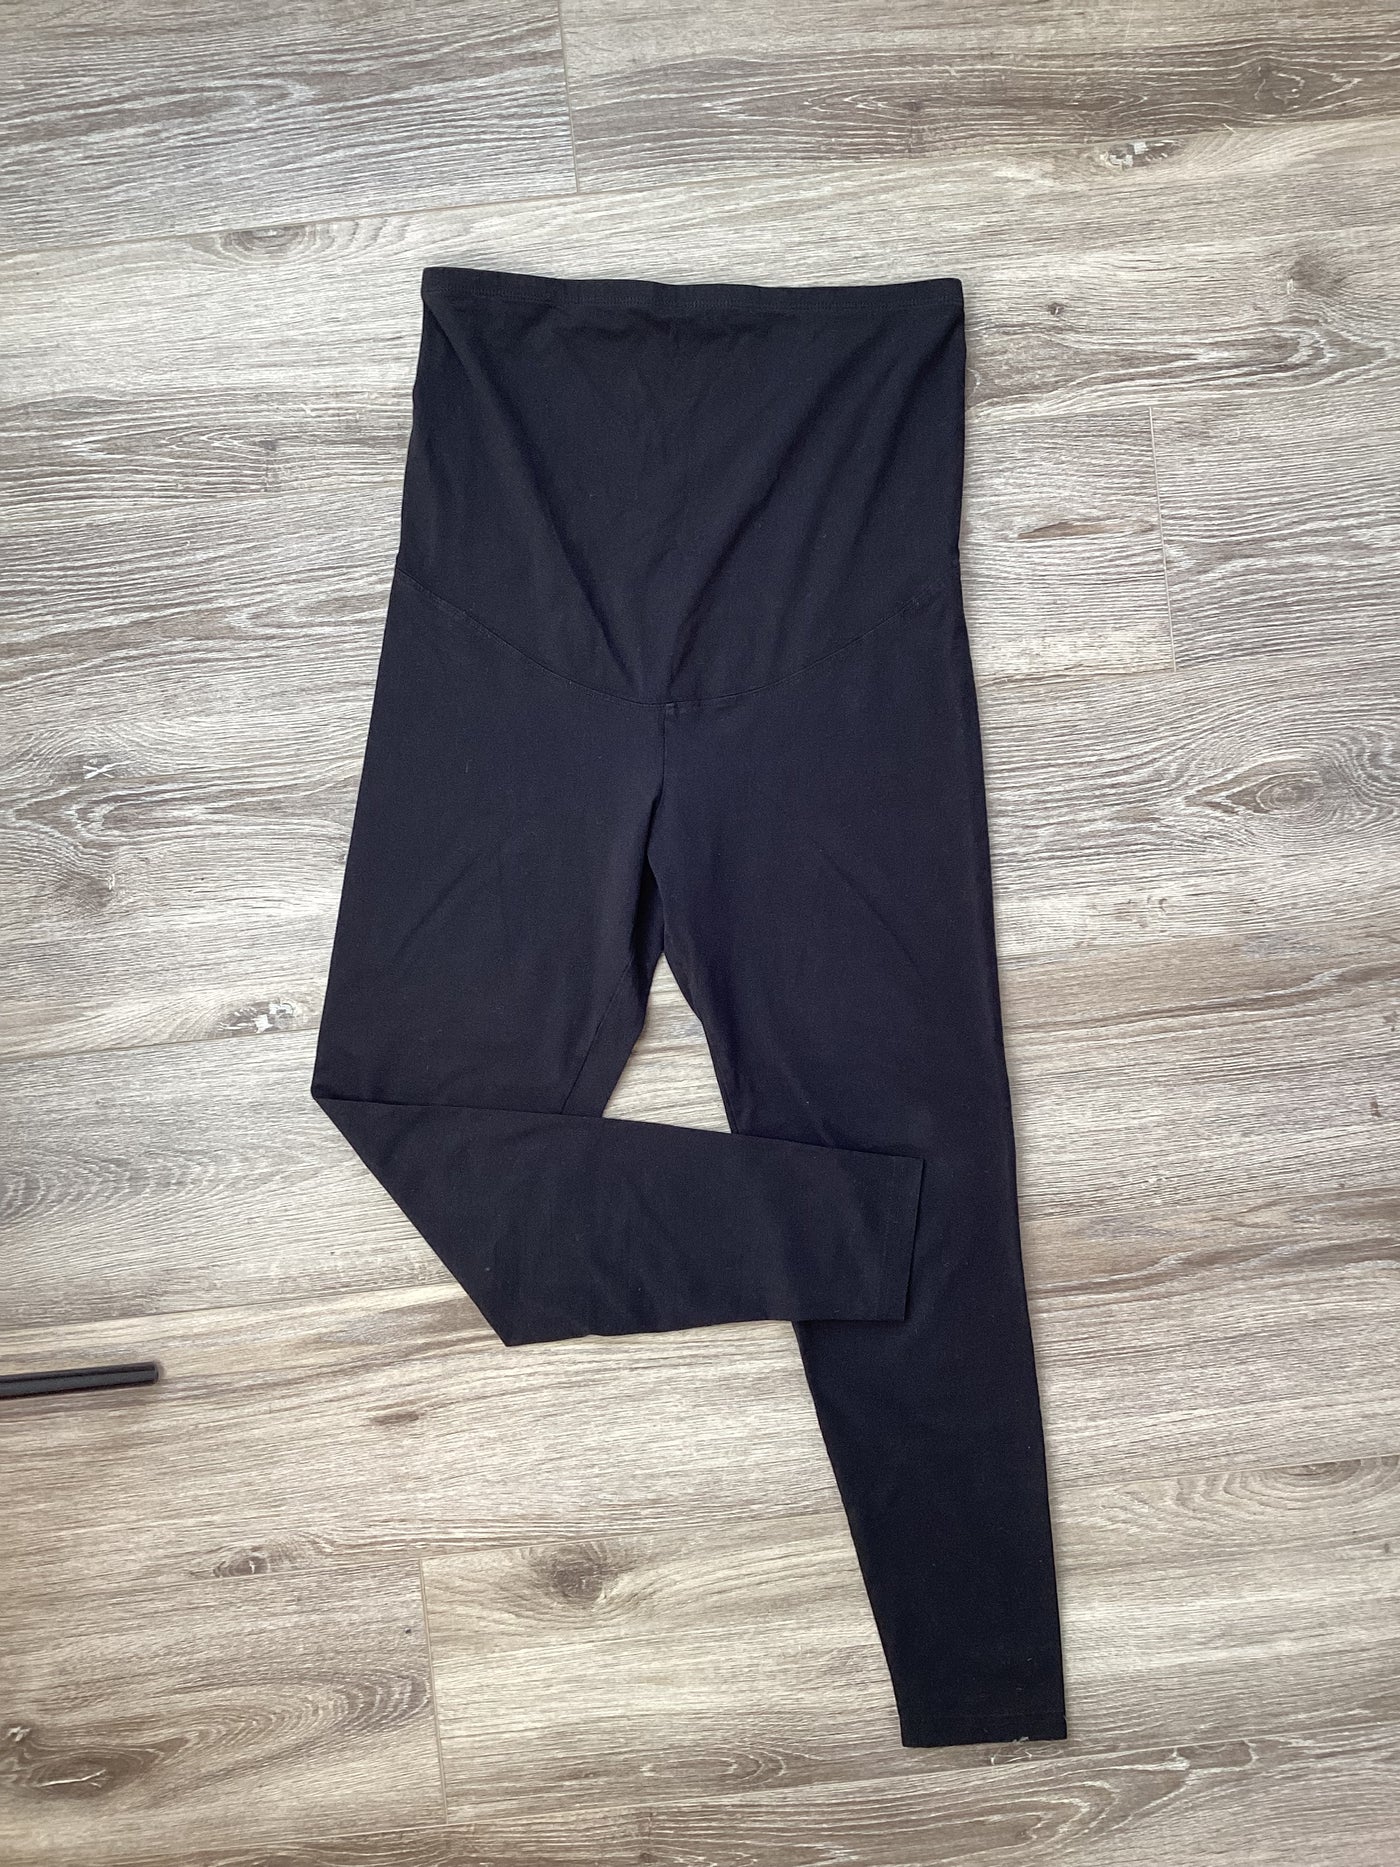 M&S Mum black overbump leggings - Size 14 reg